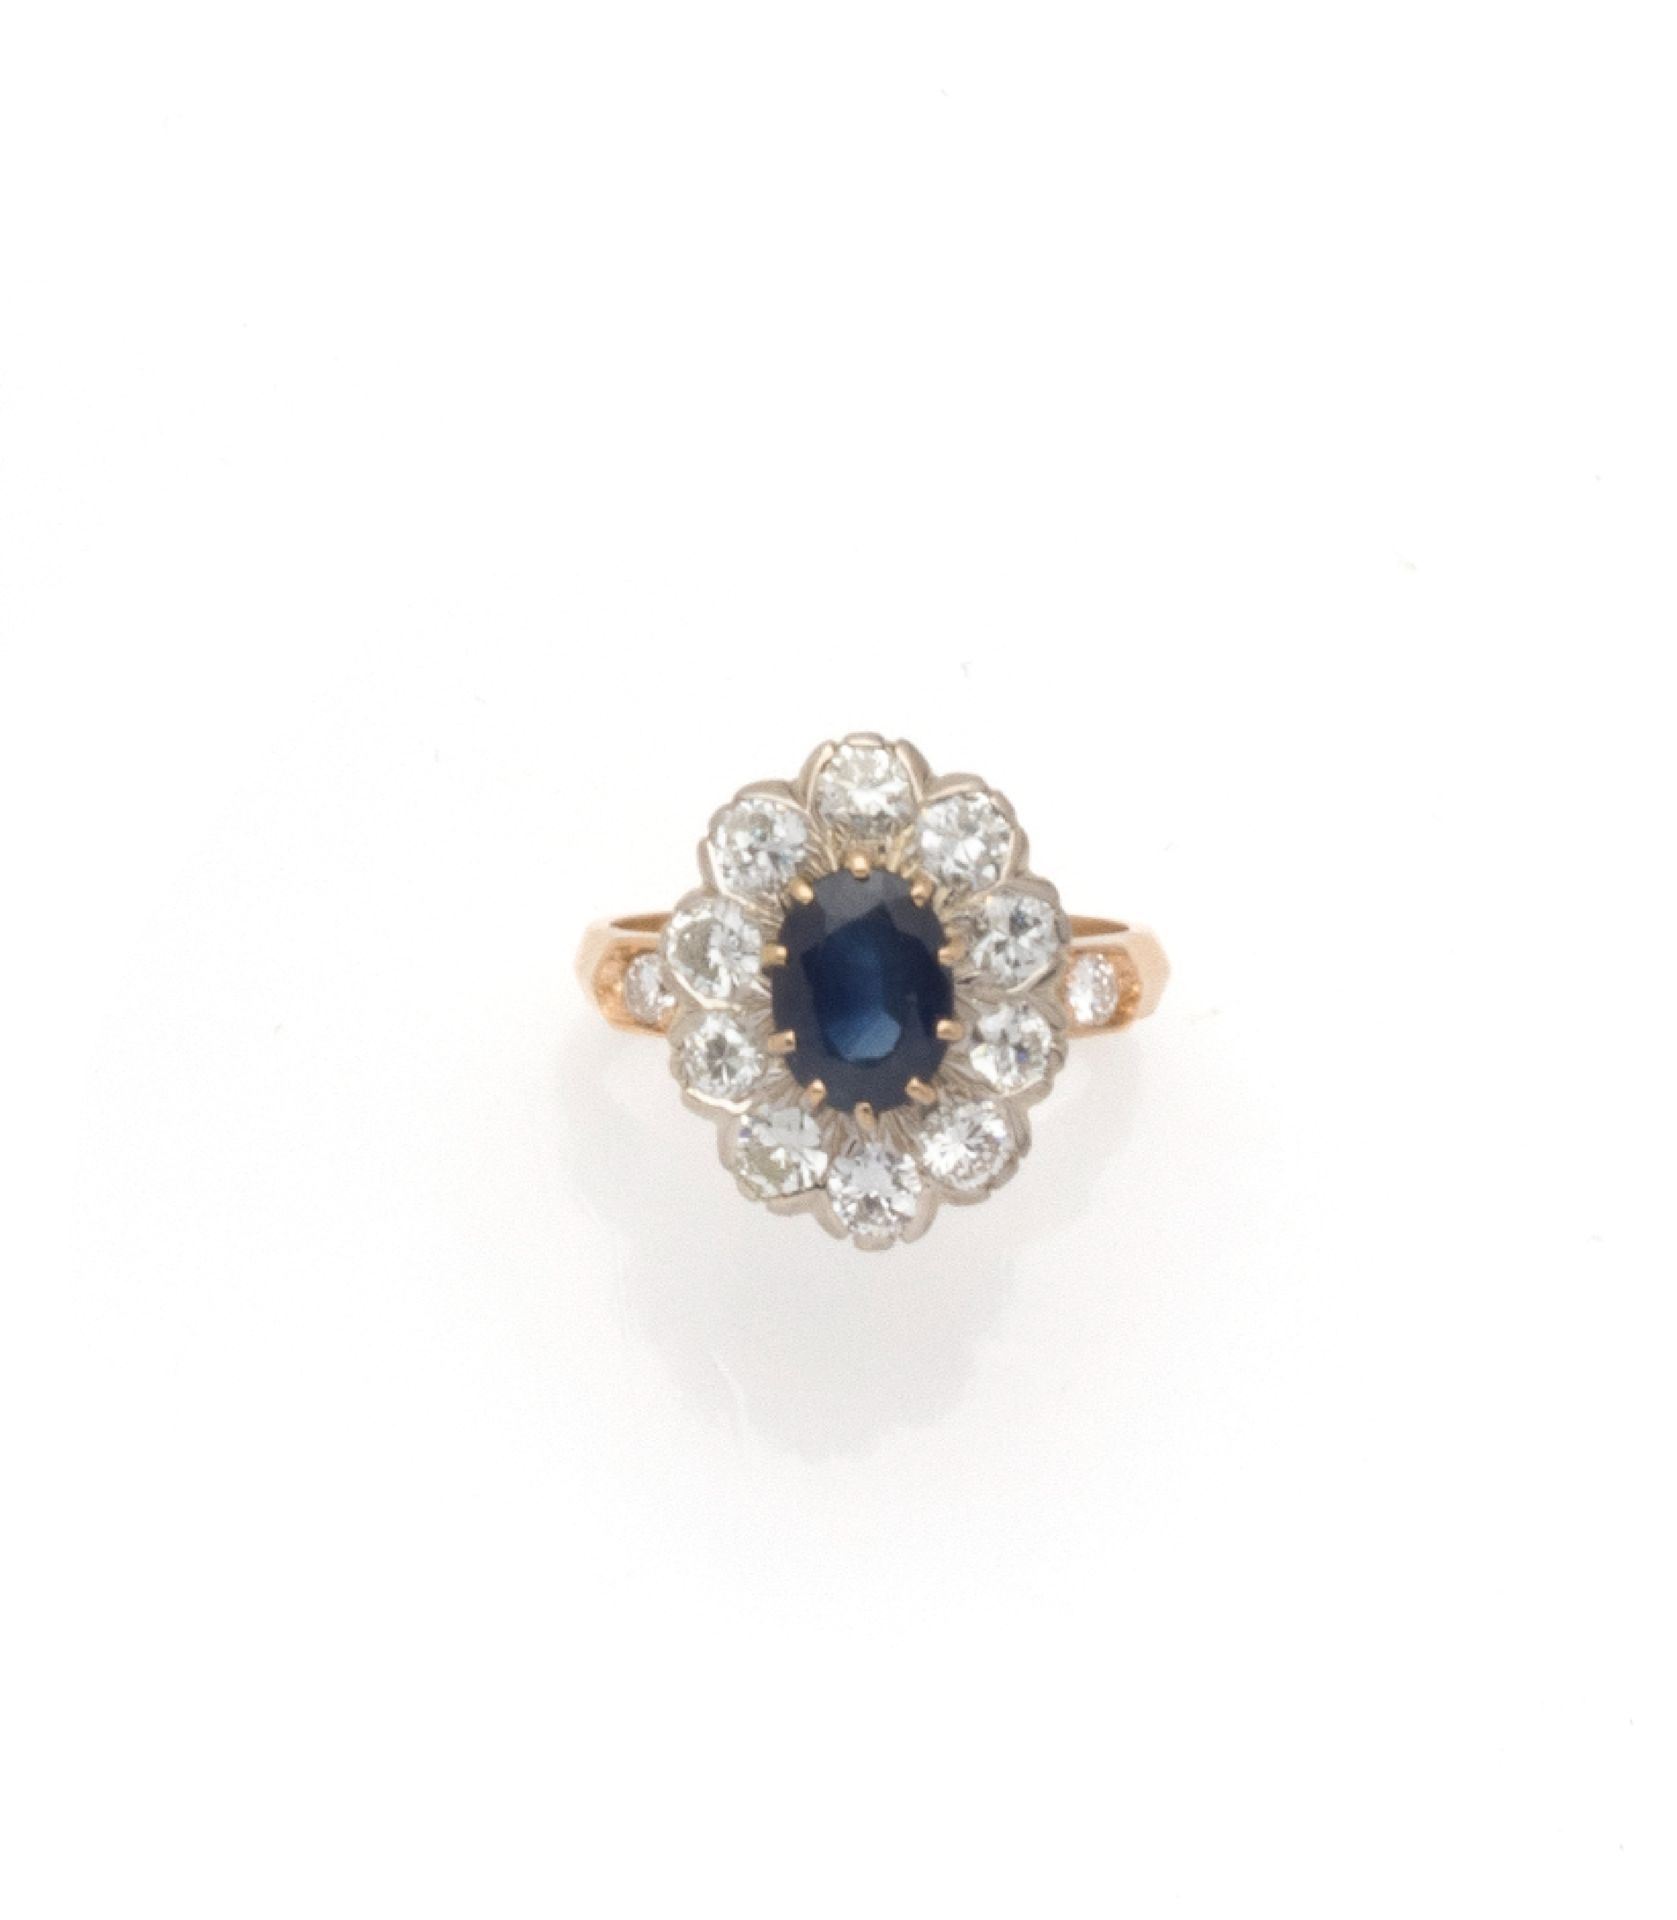 Null 双色18K（750/1000）金蓬巴杜戒指，爪式镶嵌一颗重约1.5克拉的椭圆形蓝宝石，周围有10颗明亮式切割钻石。戒指上镶嵌着2颗明亮式切割钻石。

&hellip;